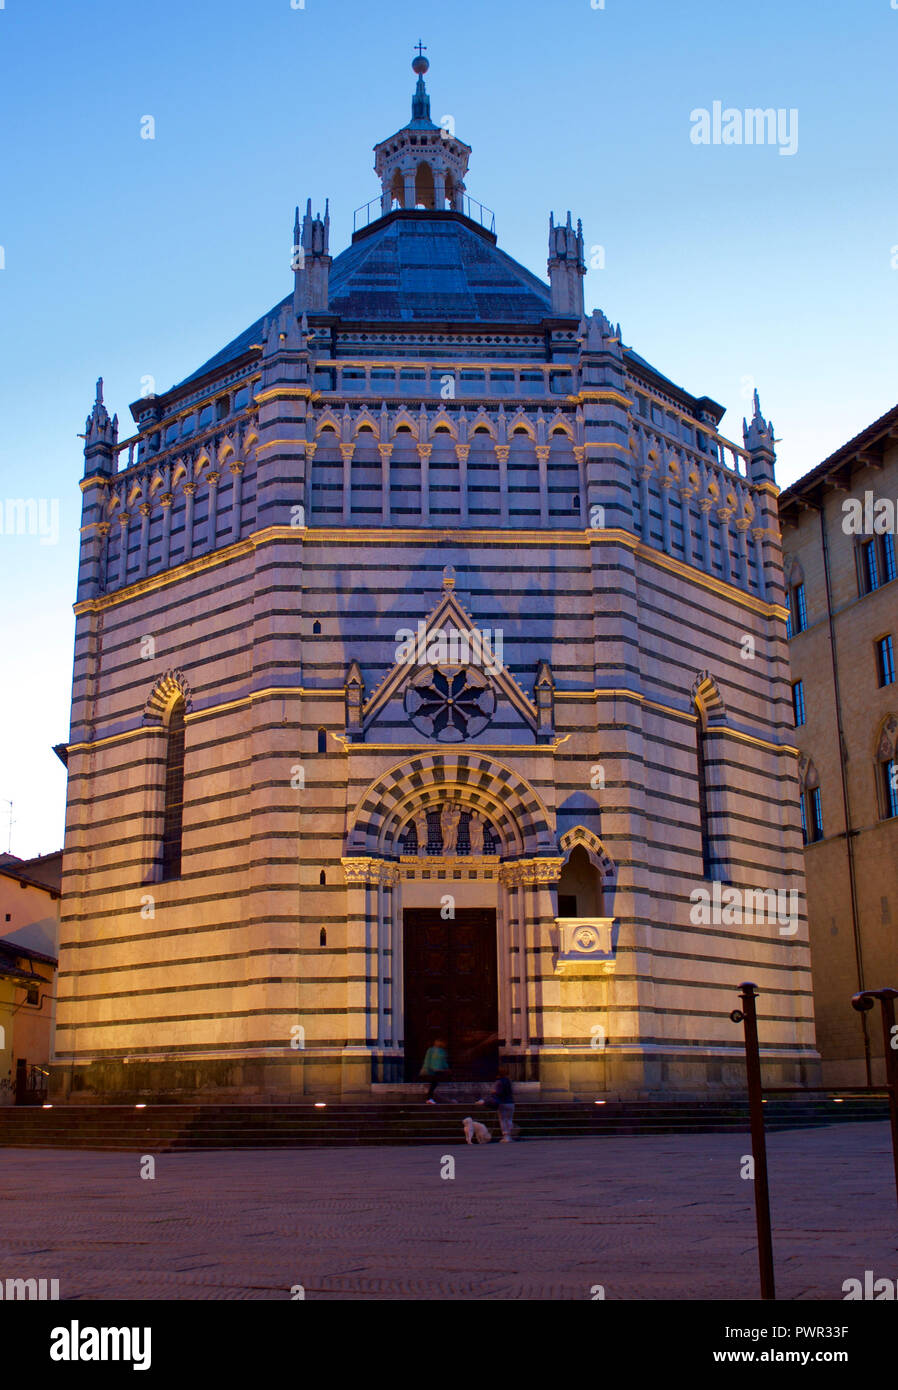 Pistoia baptistère Saint-Jean vu de ci-dessous lors de l'heure bleue, chef d'oeuvre de l'architecture gothique, Toscane Italie Banque D'Images